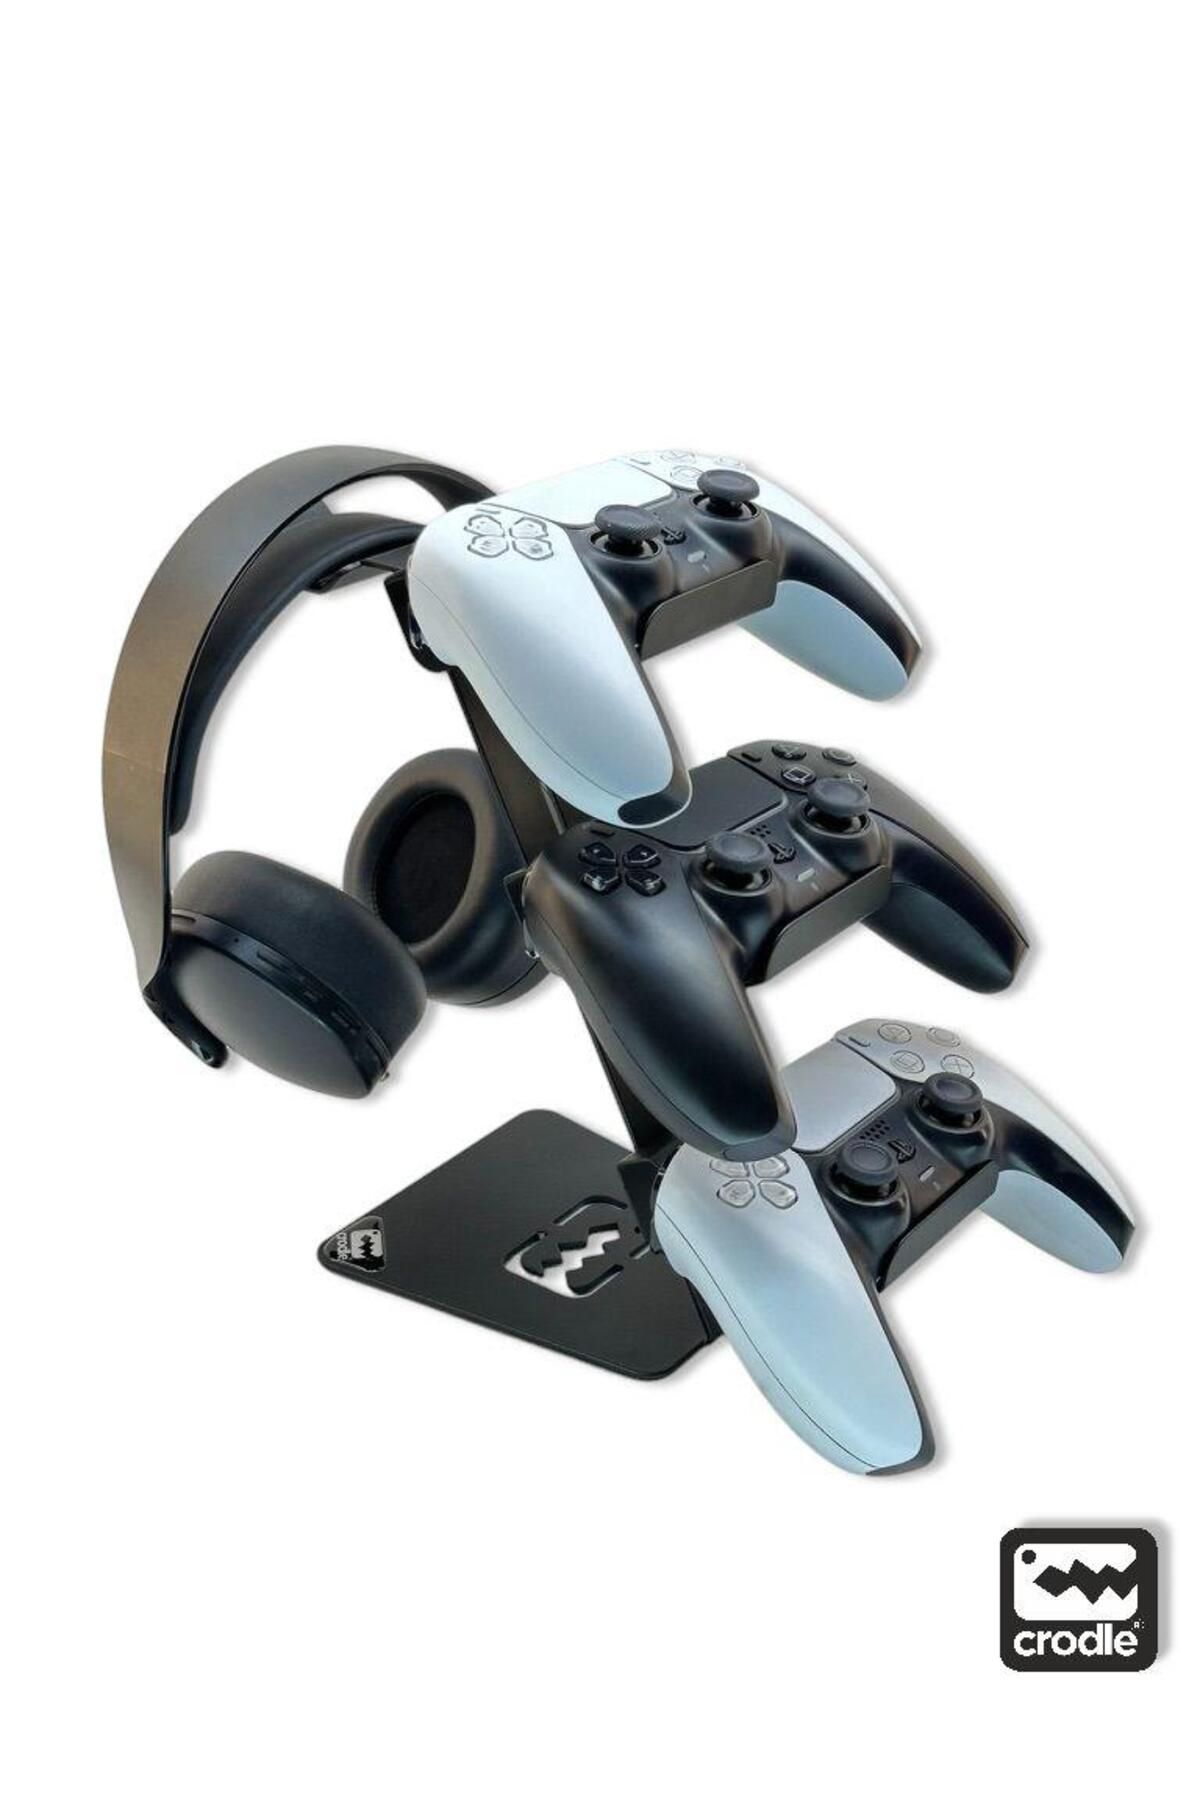 Crodle Çok Fonksiyonlu Metal Gaming Ps5 Ps4 Xbox Joystick Kontroller Tutucu Ve Kulaklık Dikey Standı